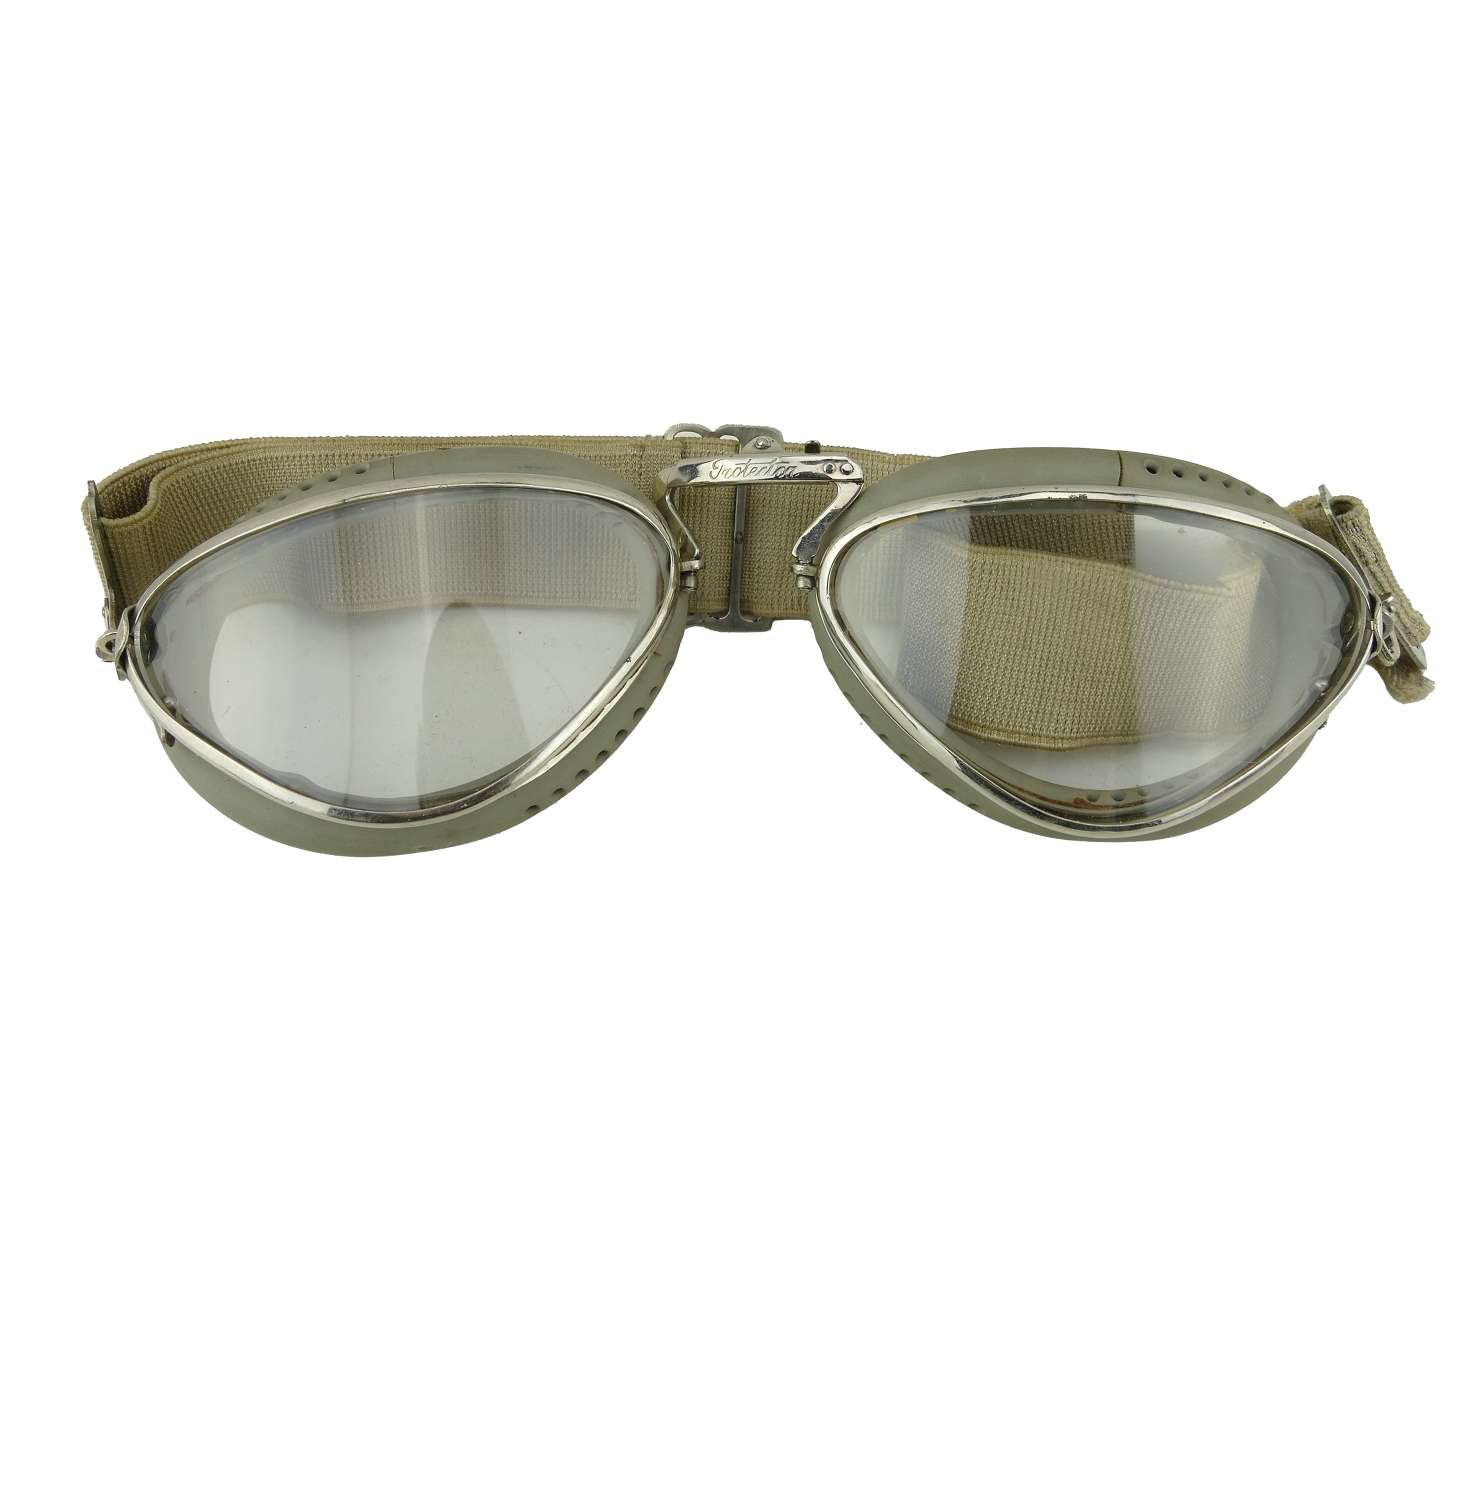 Italian Protector flying goggles